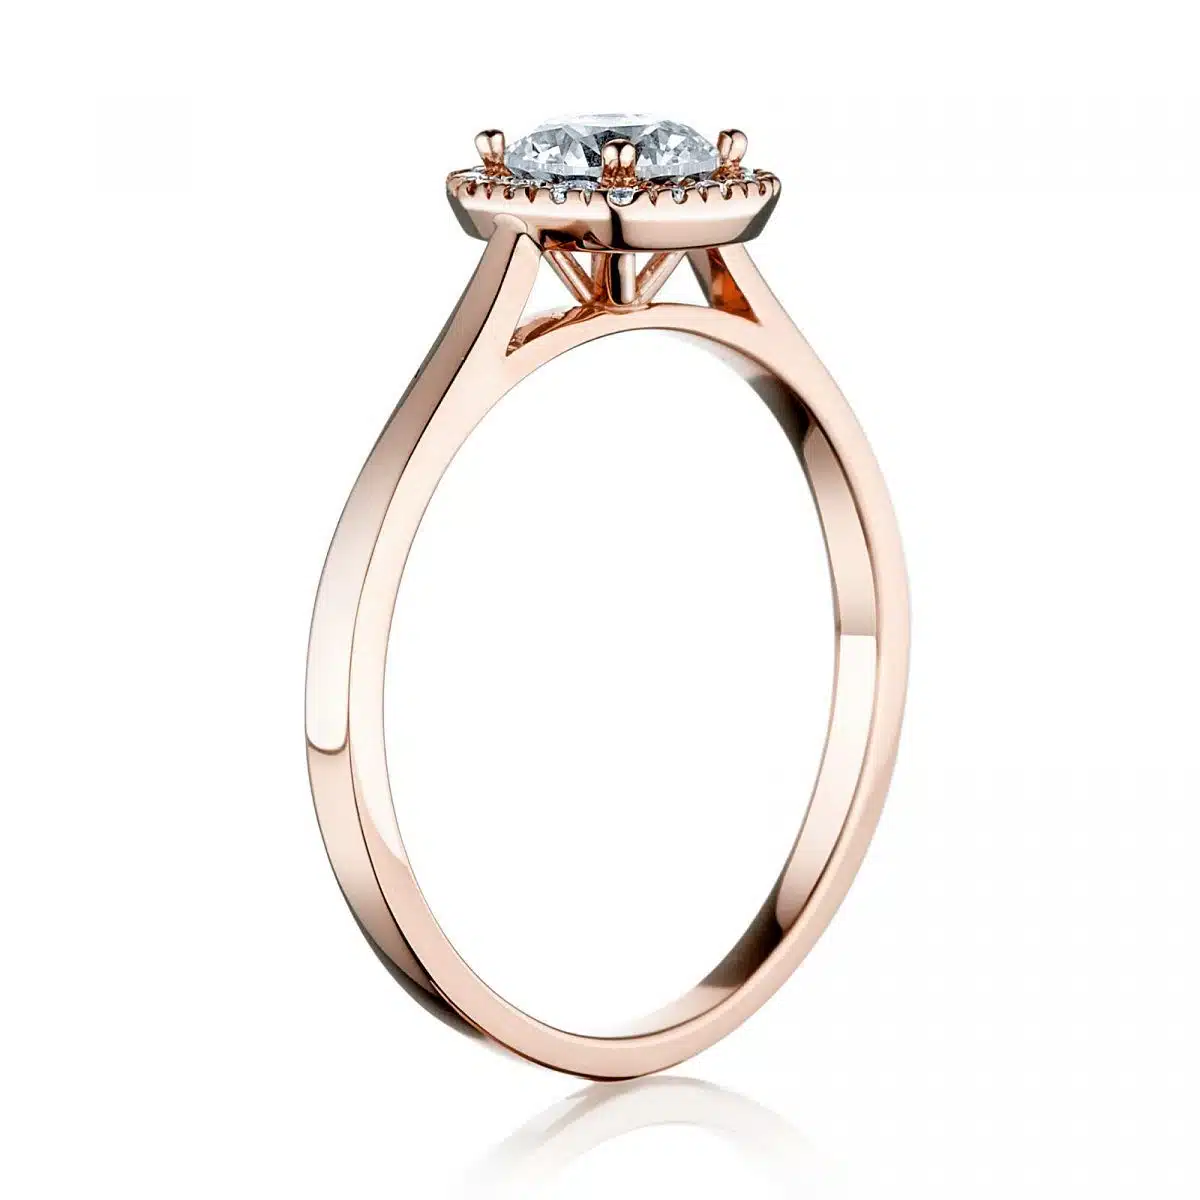 Prsteň Manhattan - rúžové zlato s prírodným diamantom